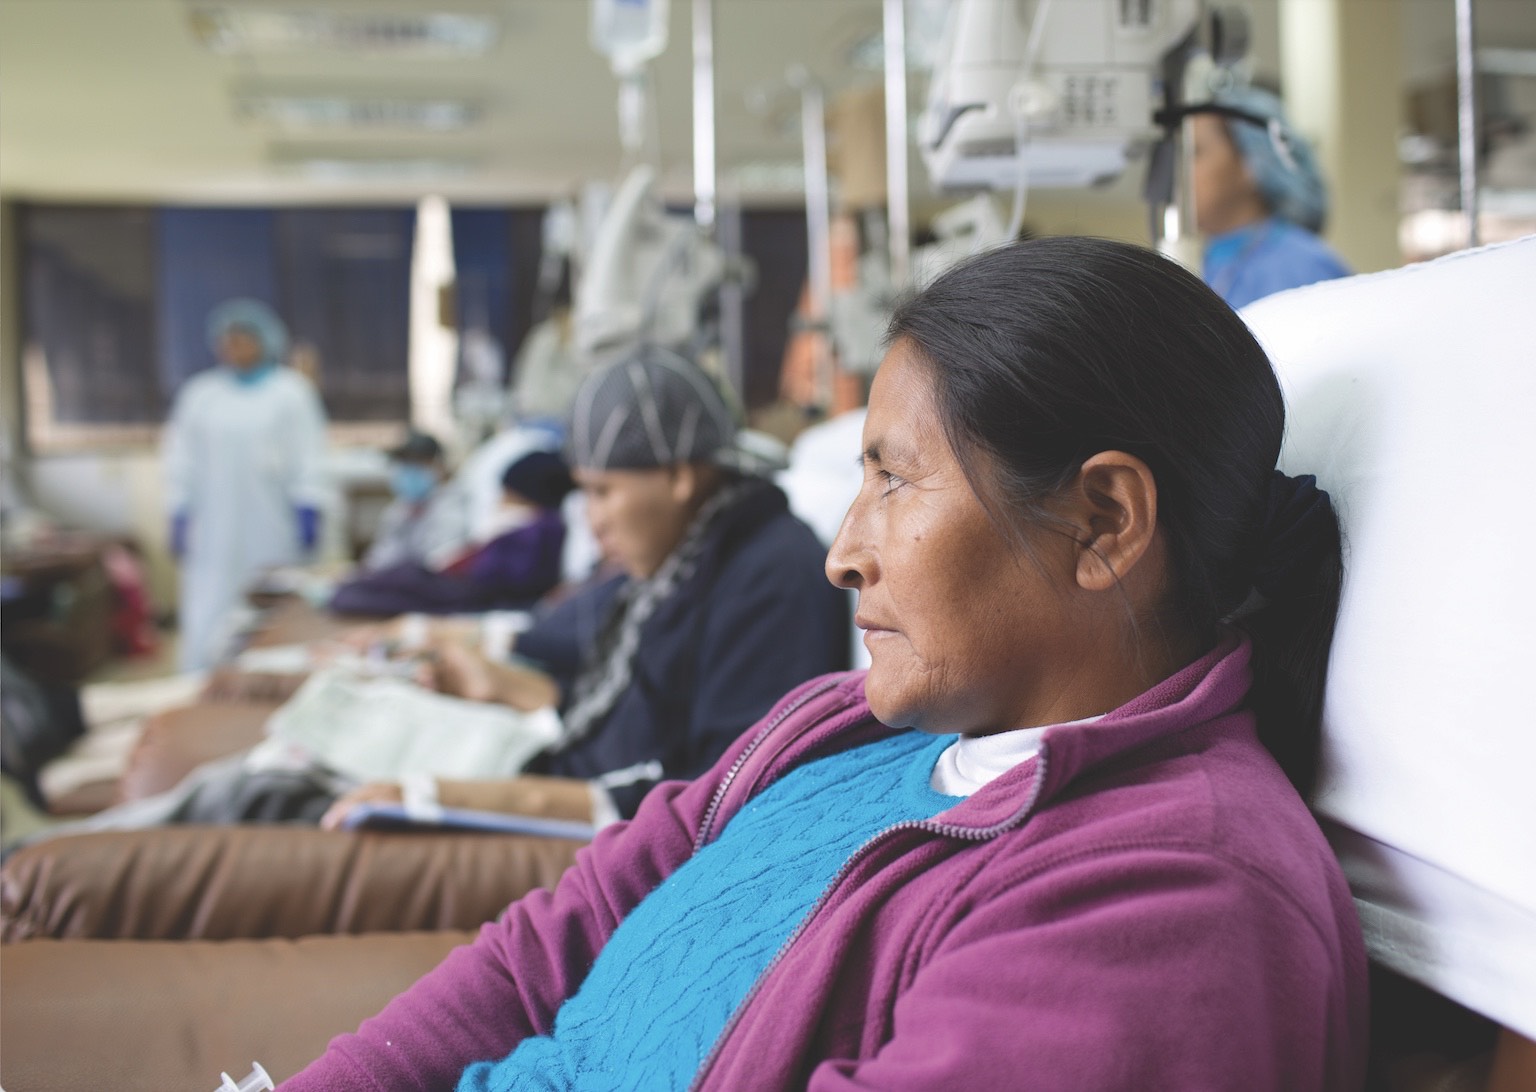 Cáncer de mama en Perú: seis regiones con índices alarmantes demandan descentralización médica